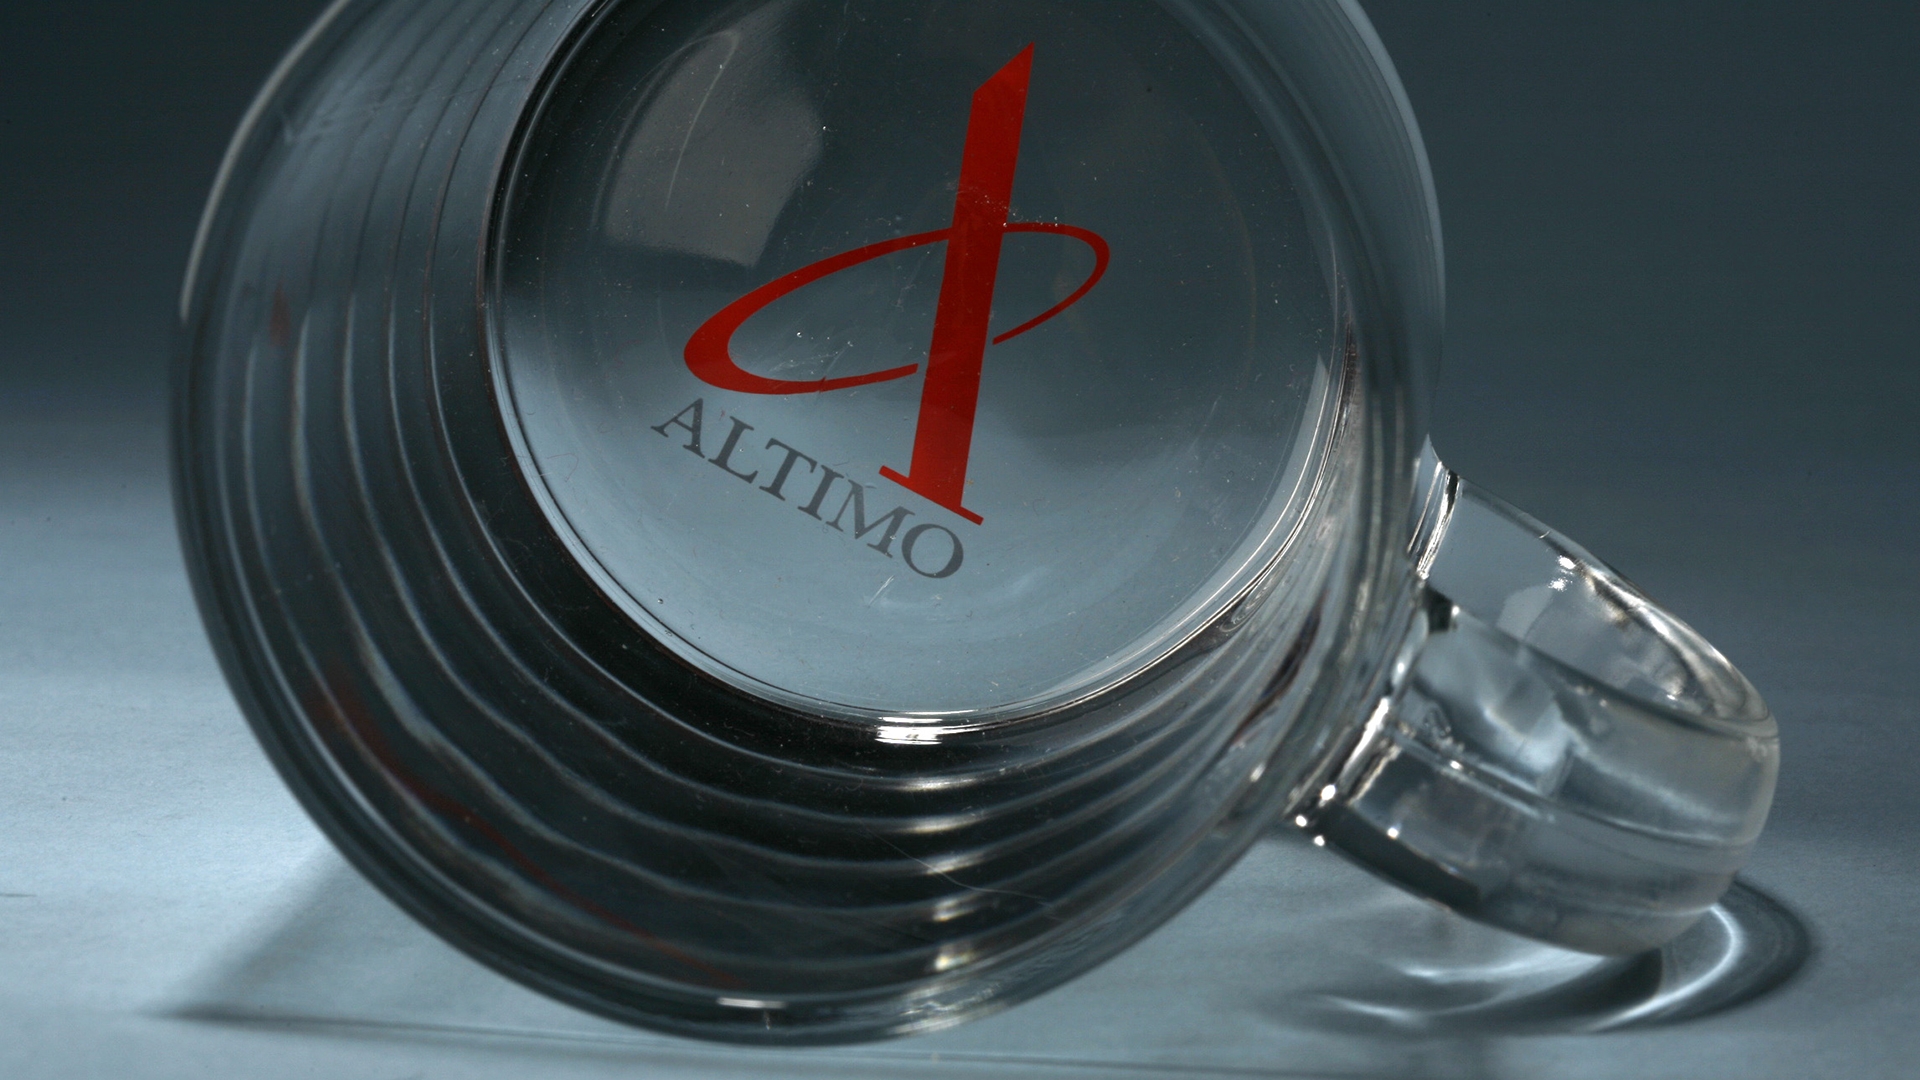 Altimo - Сувенирная продукция